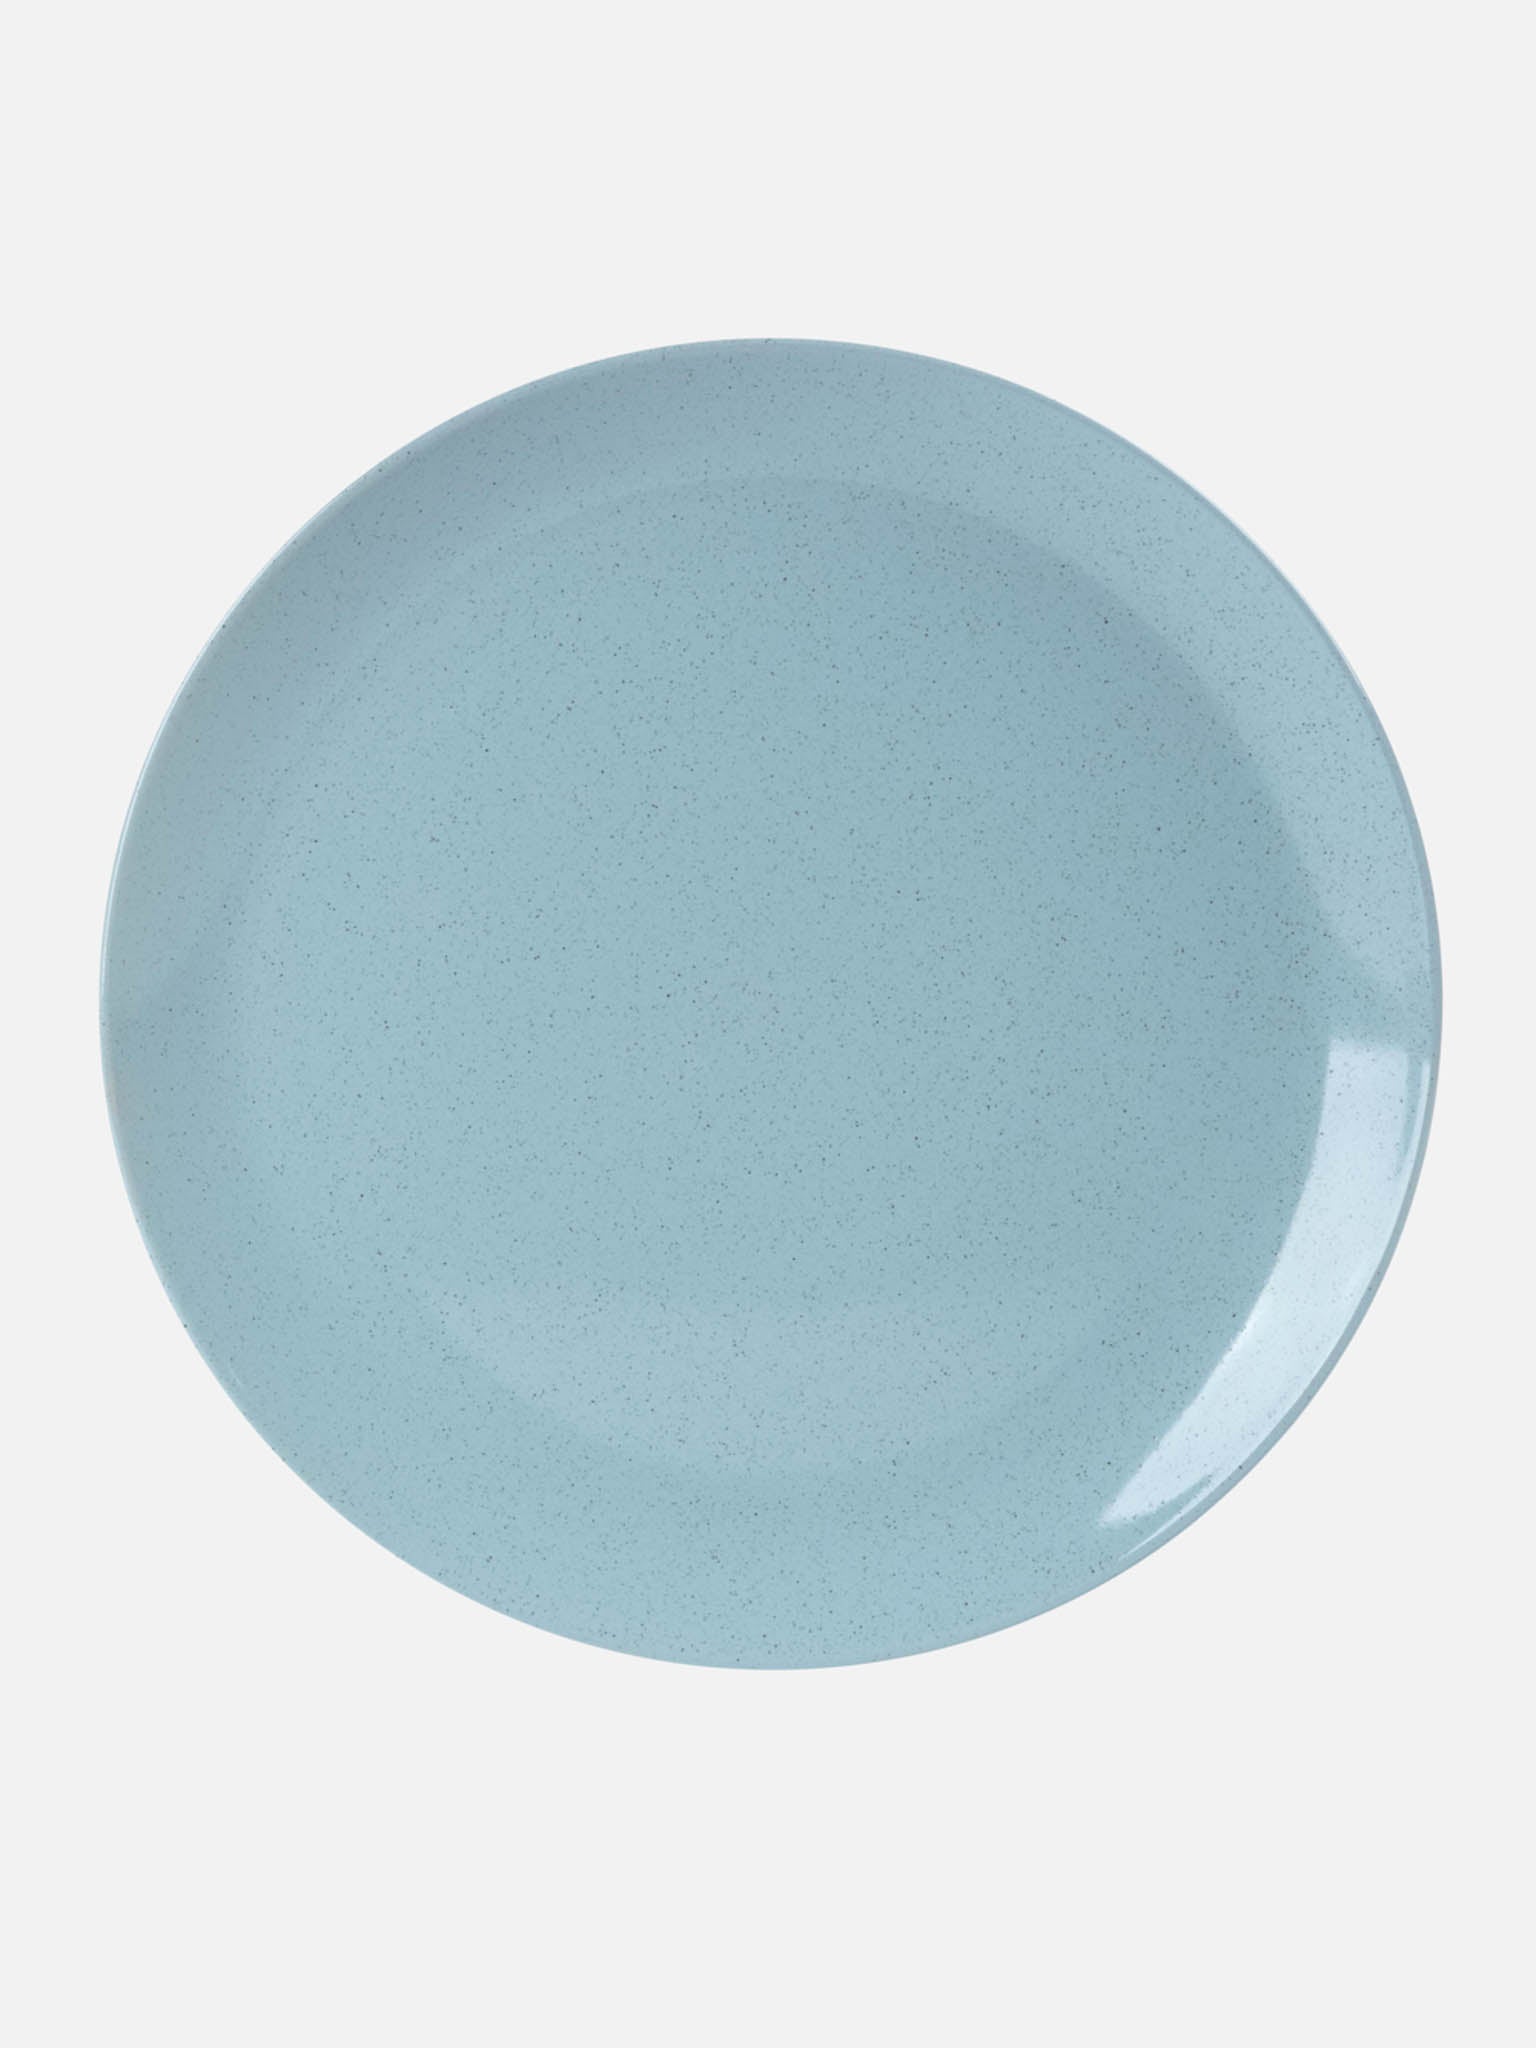 Tstf Ceramic Dinner Plate